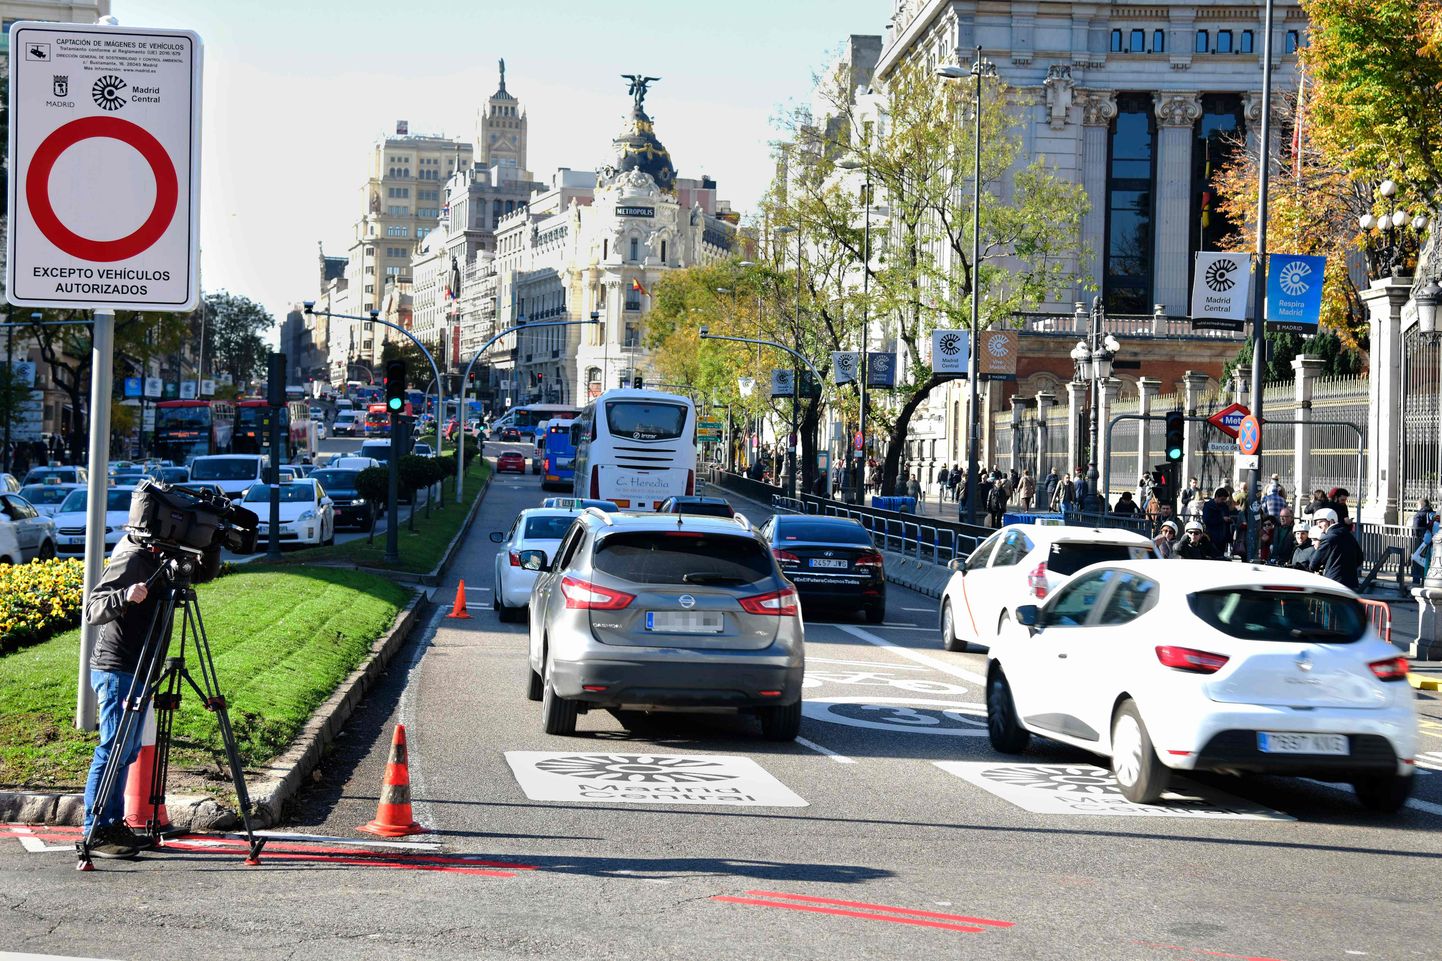 С конца ноября власти Мадрида реализуют проект под названием Madrid Central, главная цель которого - ограничить движение транспорта и озеленить территорию города общей площадью 472 га.